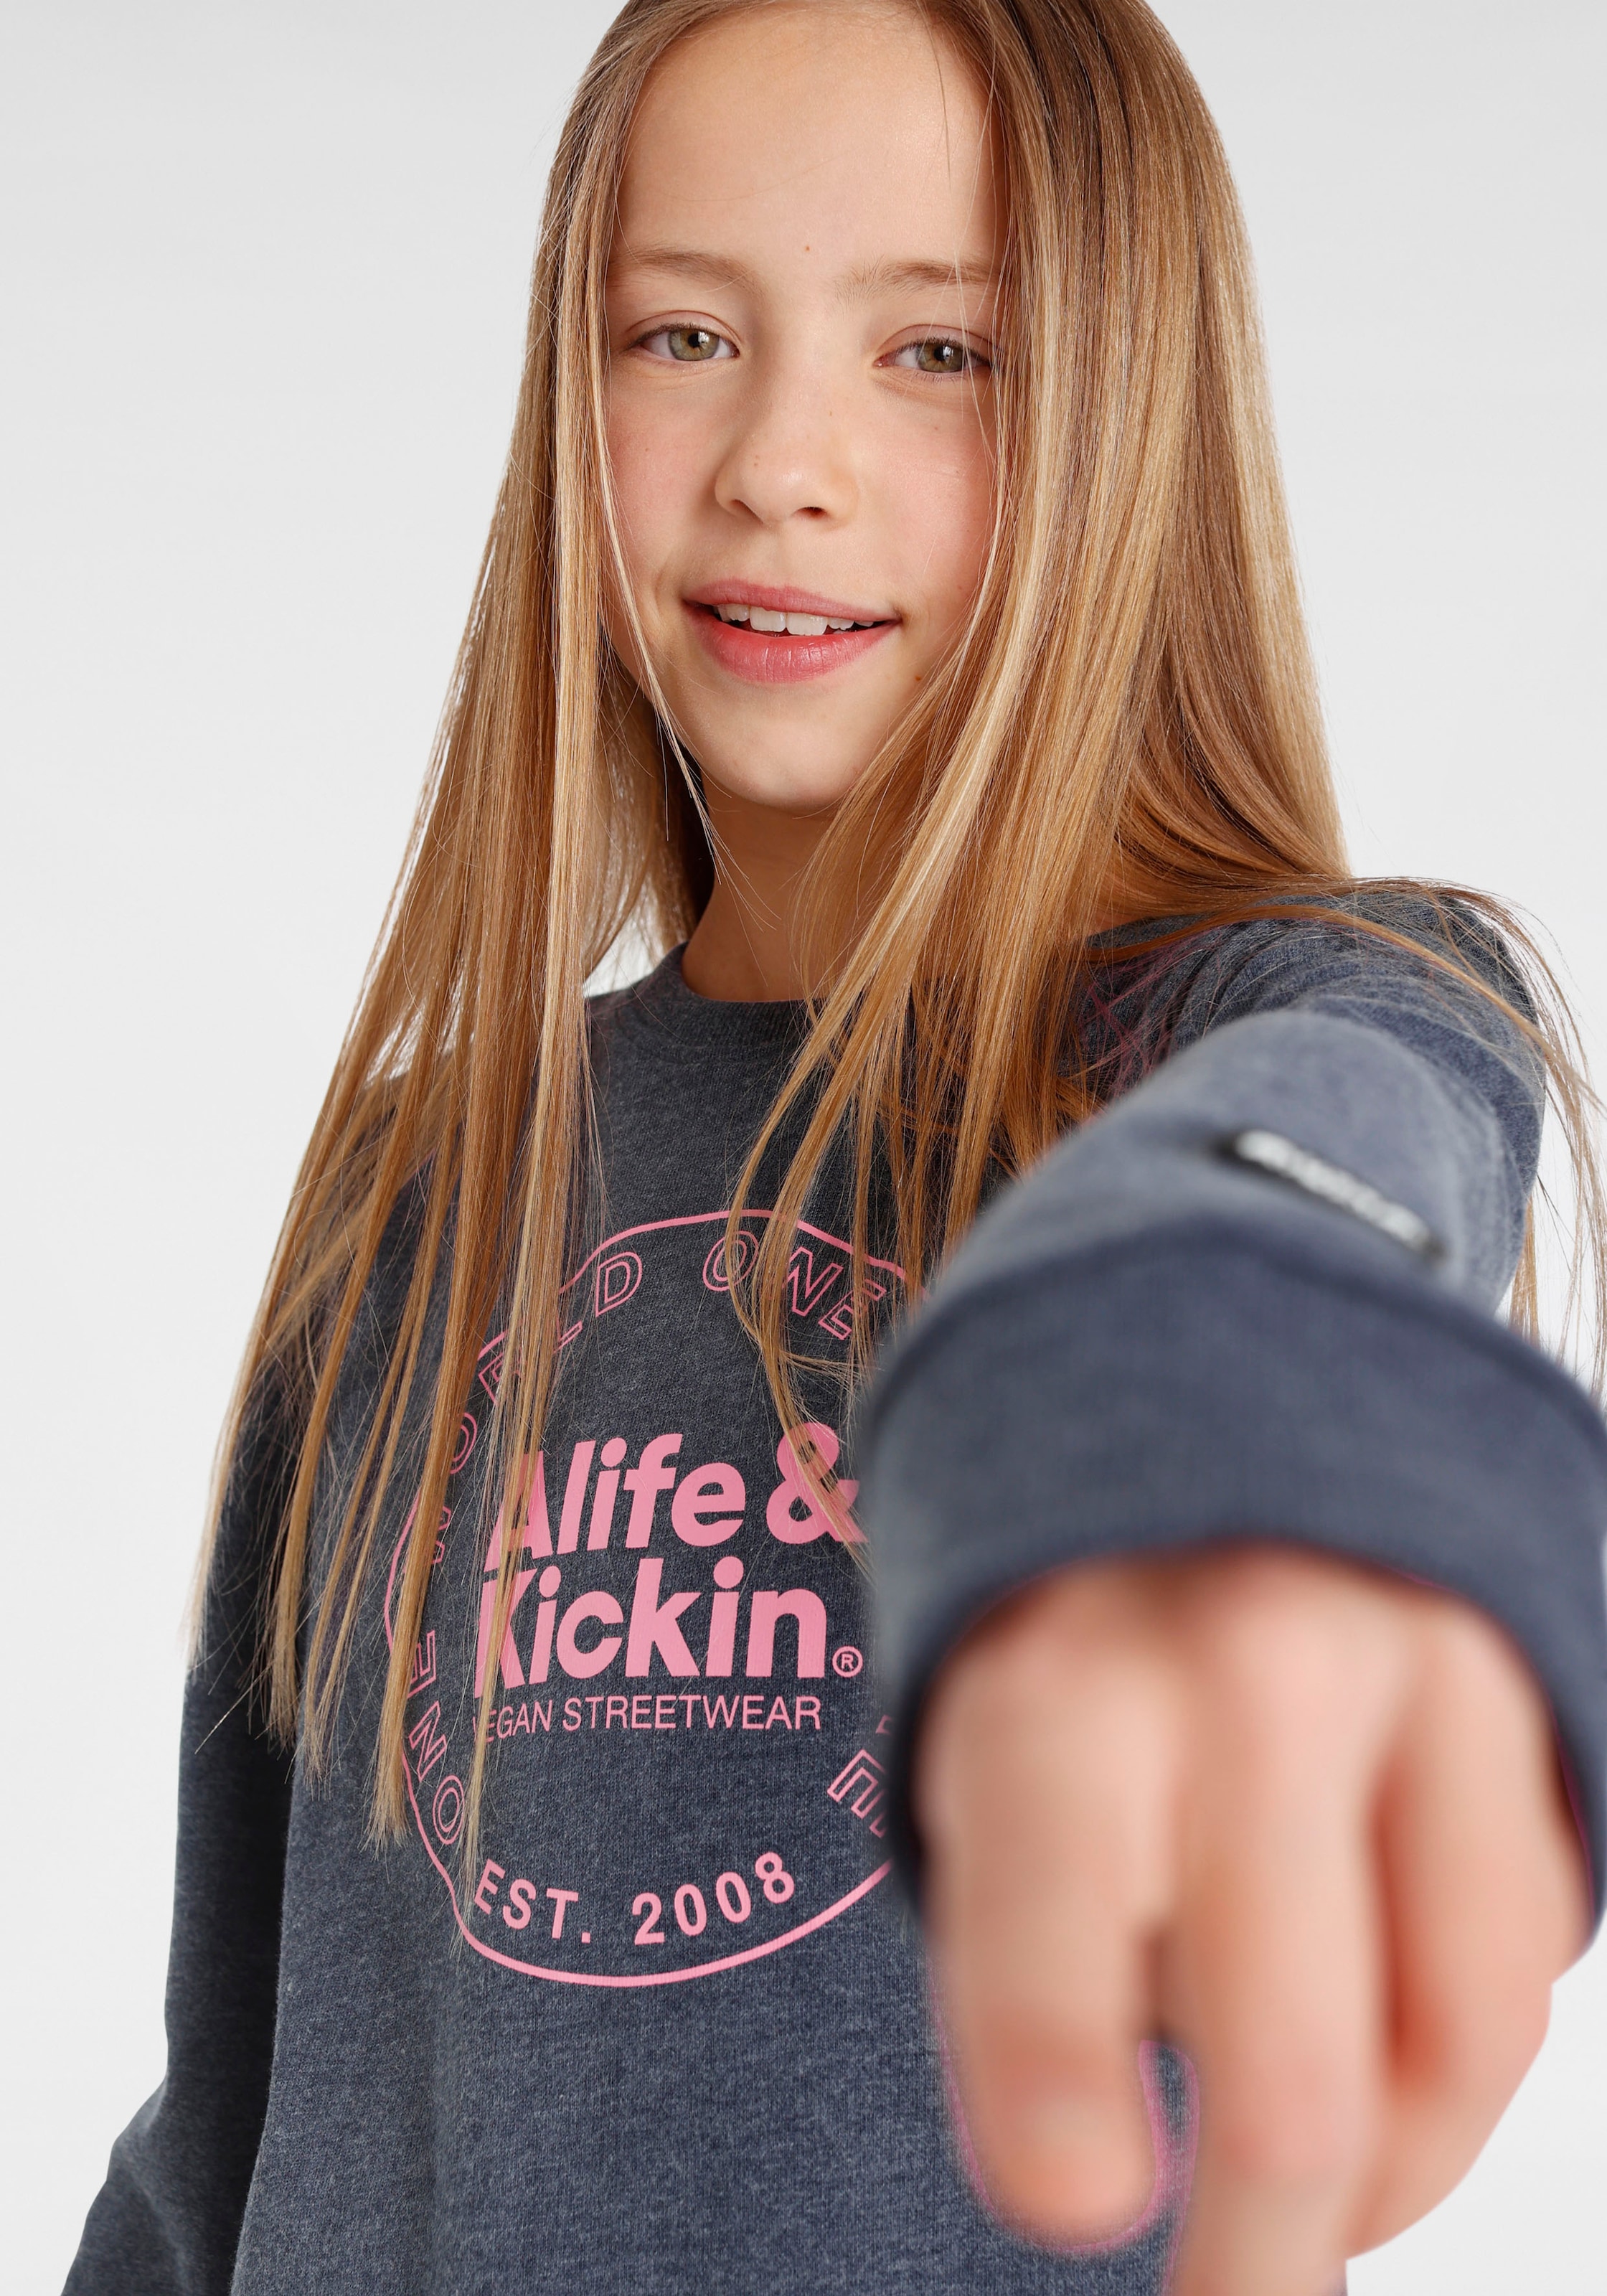 & »mit Kickin Alife Kickin & Kids. Logo kaufen online Alife MARKE! Sweatshirt Druck«, für NEUE